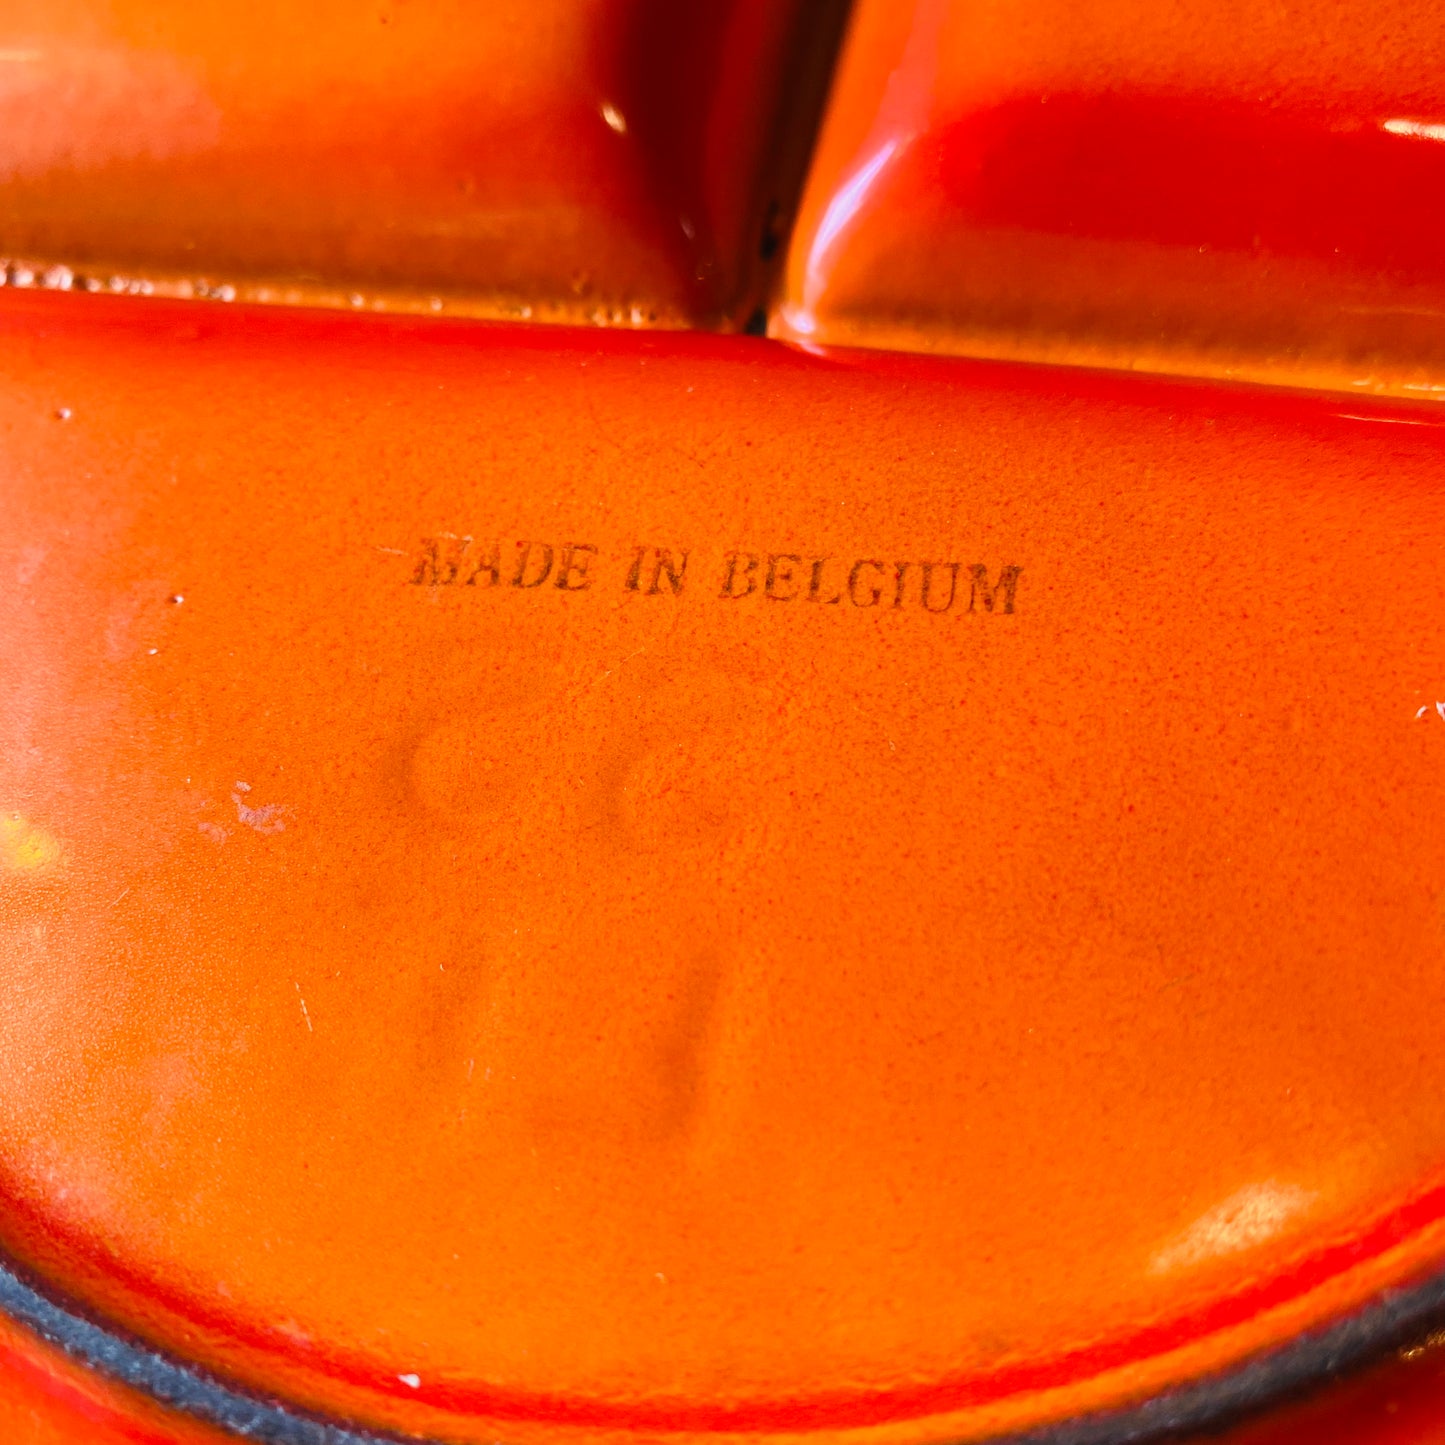 【BELGIUM vintage】アイアン プレート オレンジ